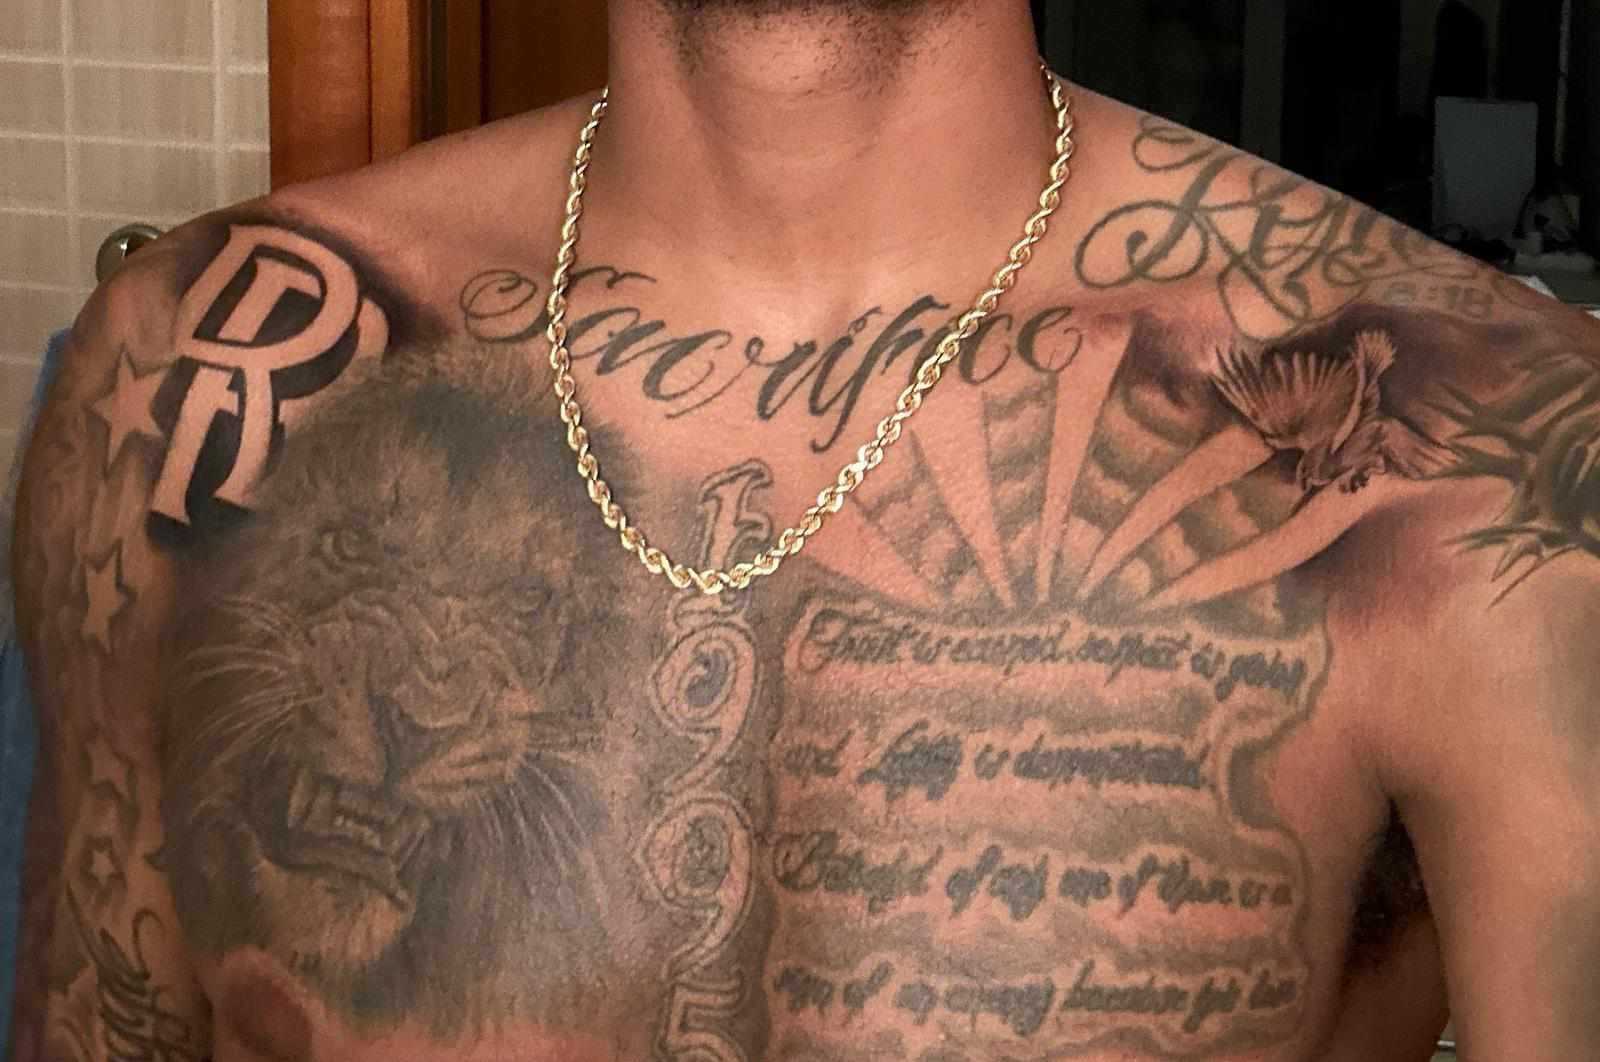 Τα τατουάζ στο στήθος του Καμ Ρέινολντς.